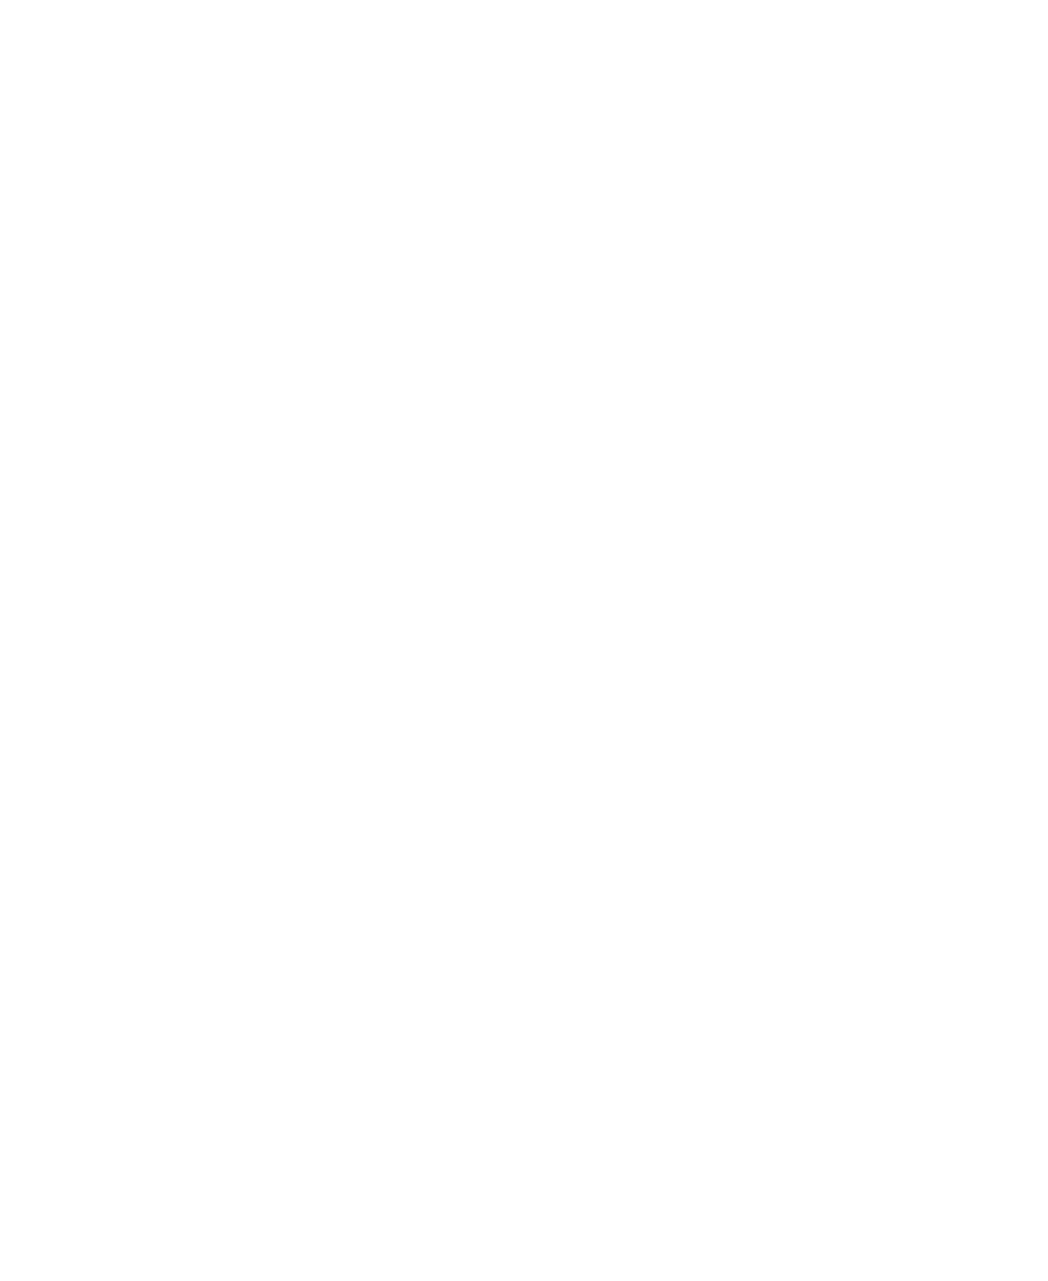 First Gen Law